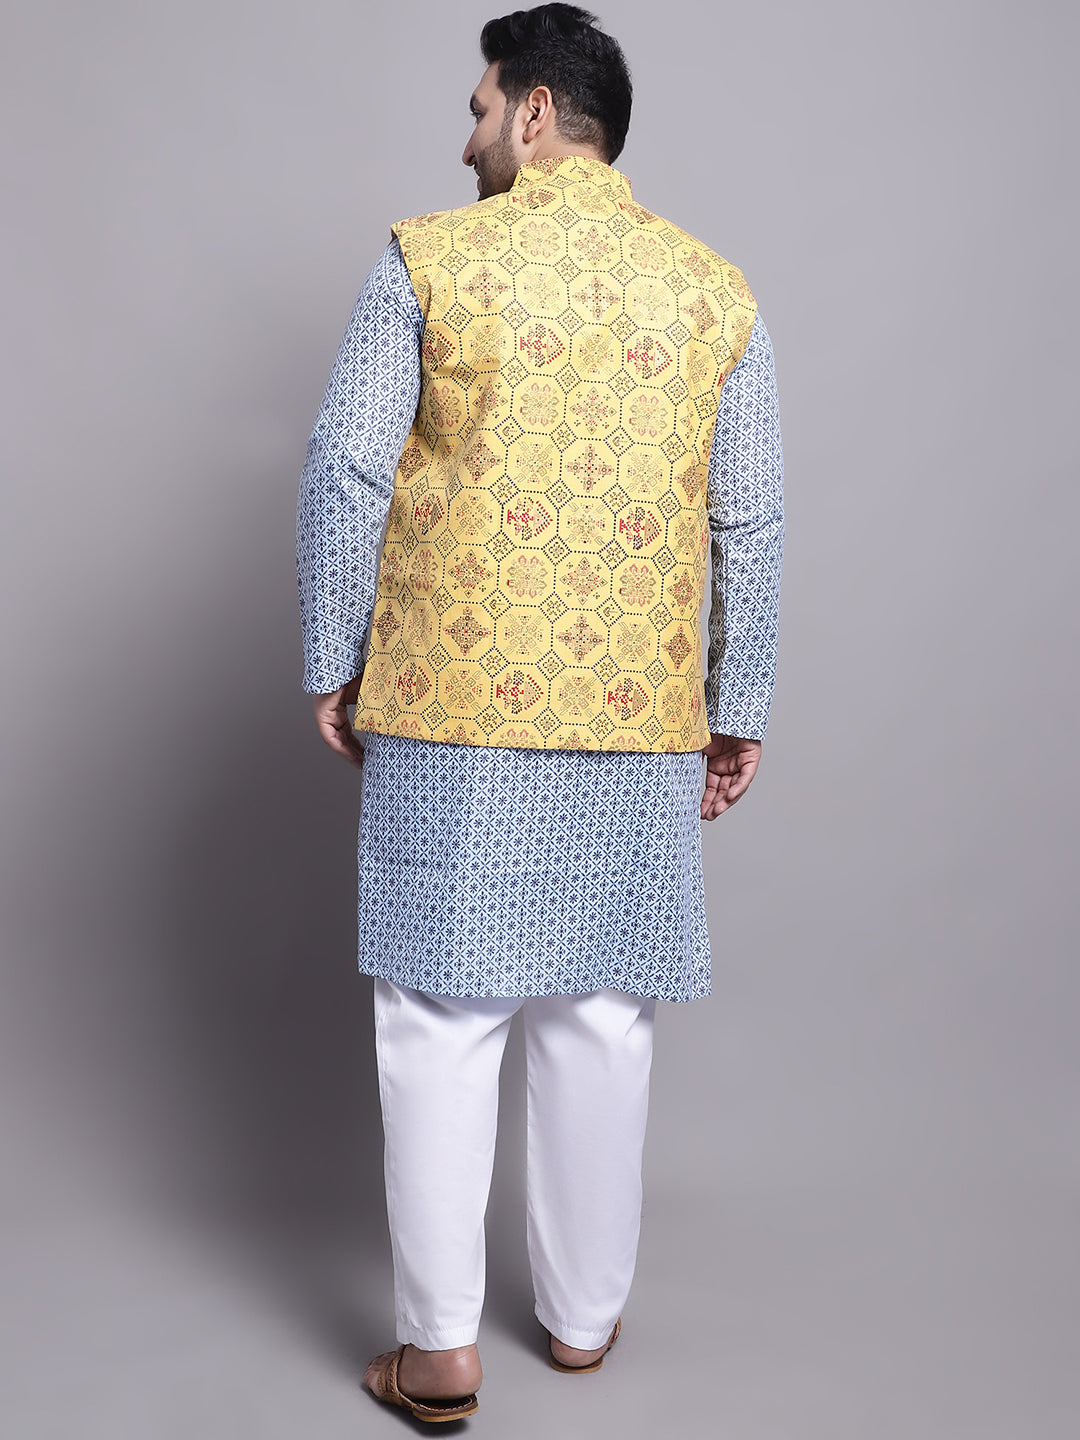 Men's Cotton Linen Blue Kurta and White Pyjama With Mustard Cotton Nehrujacket